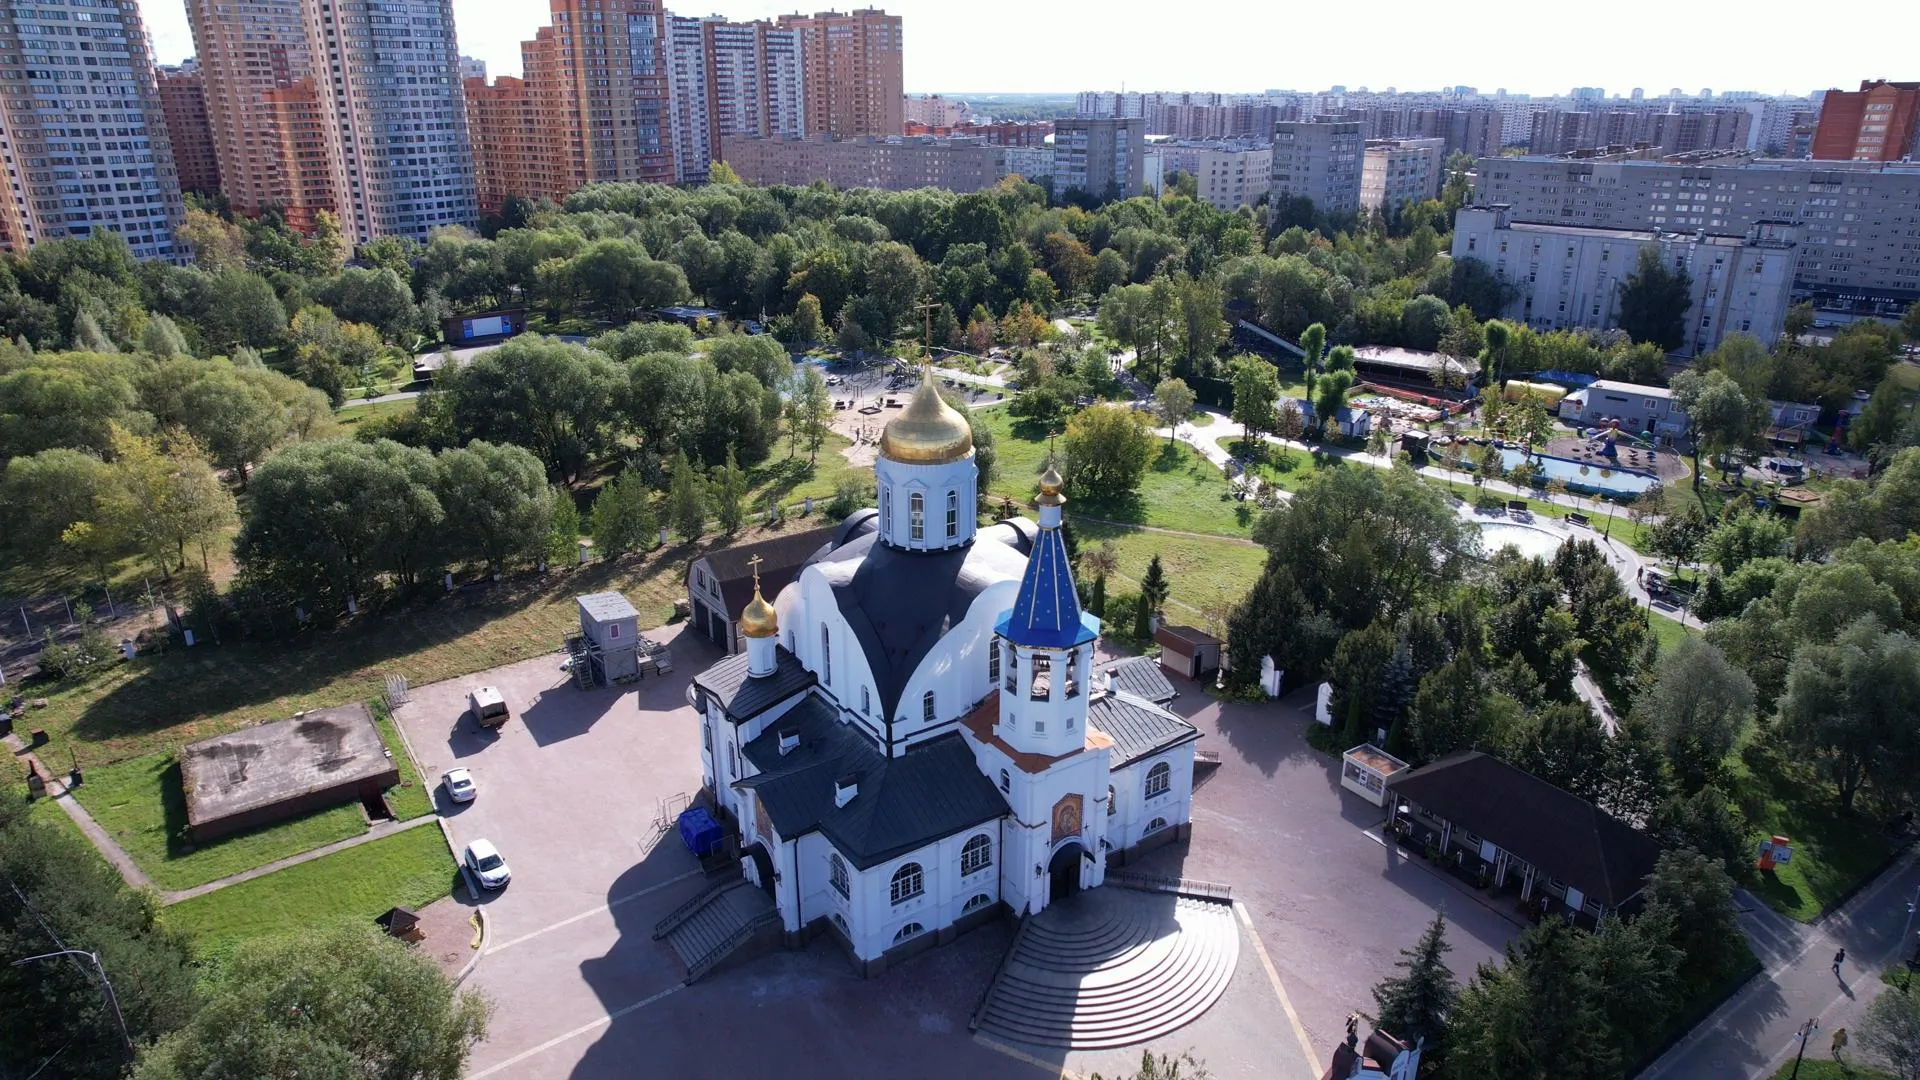 Храм Казанской иконы Божией Матери – первая церковь, появившаяся в наукограде Реутове